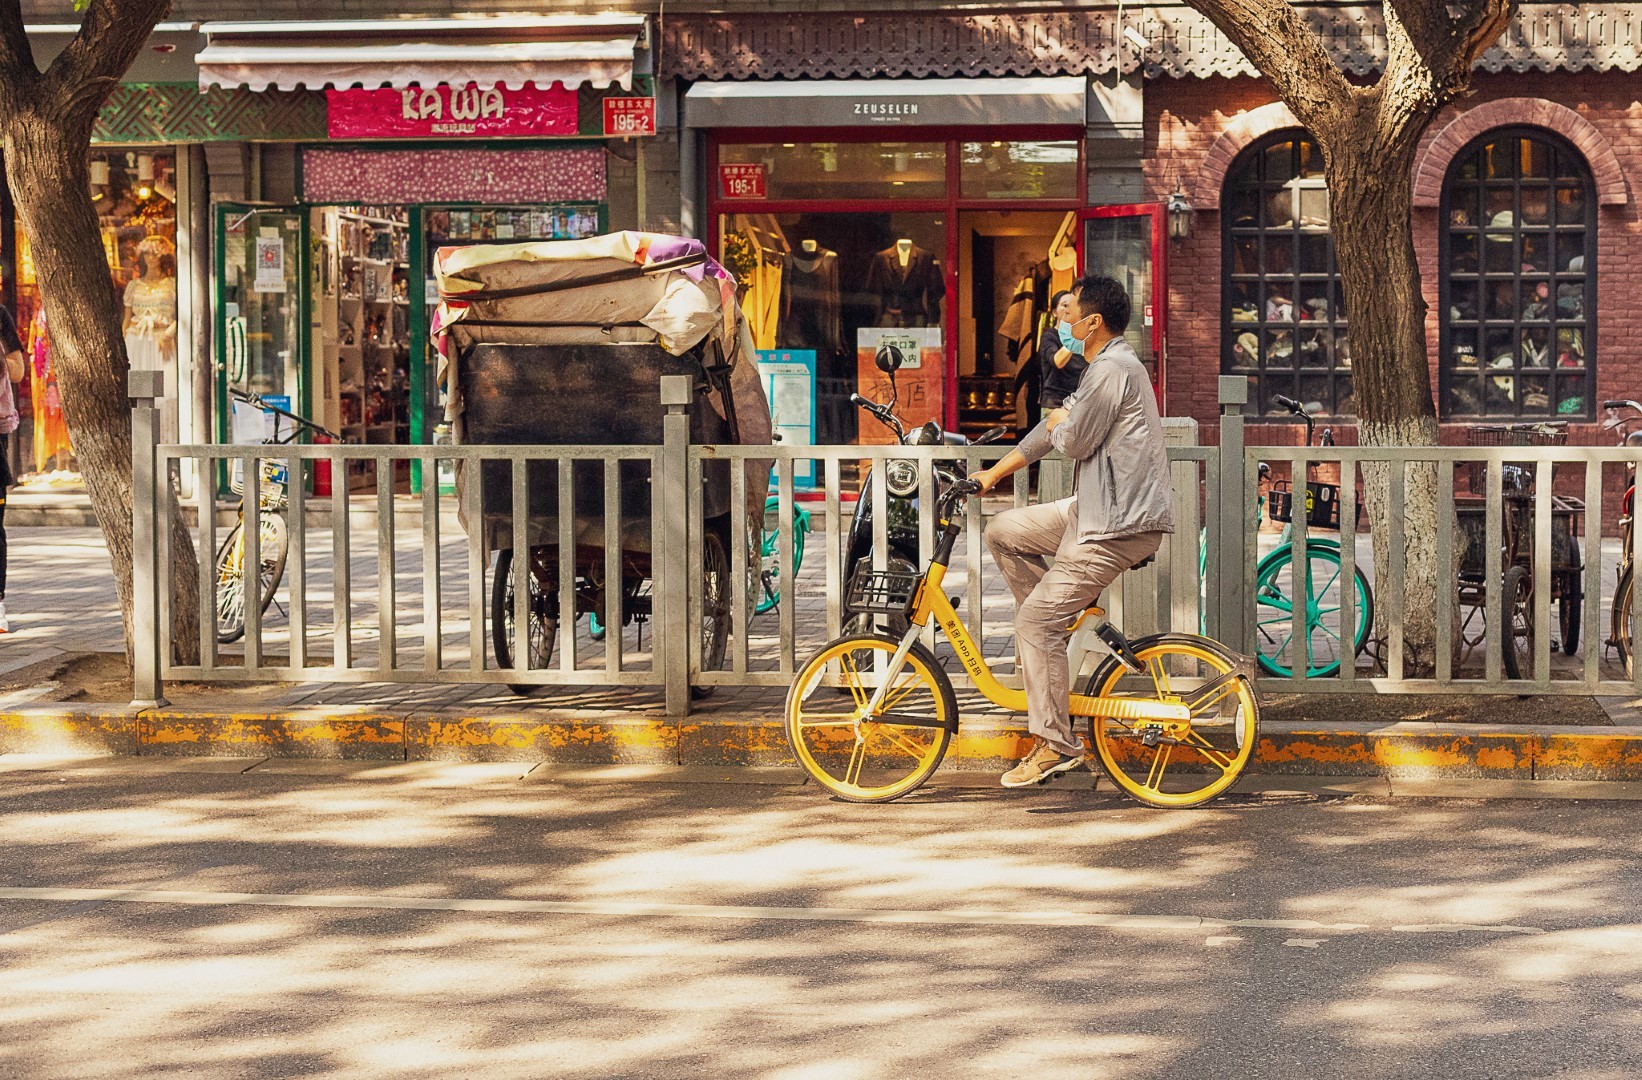 Eine typische Szenerie in einem der vielen Hutongs (Altstadtgassen) in Peking